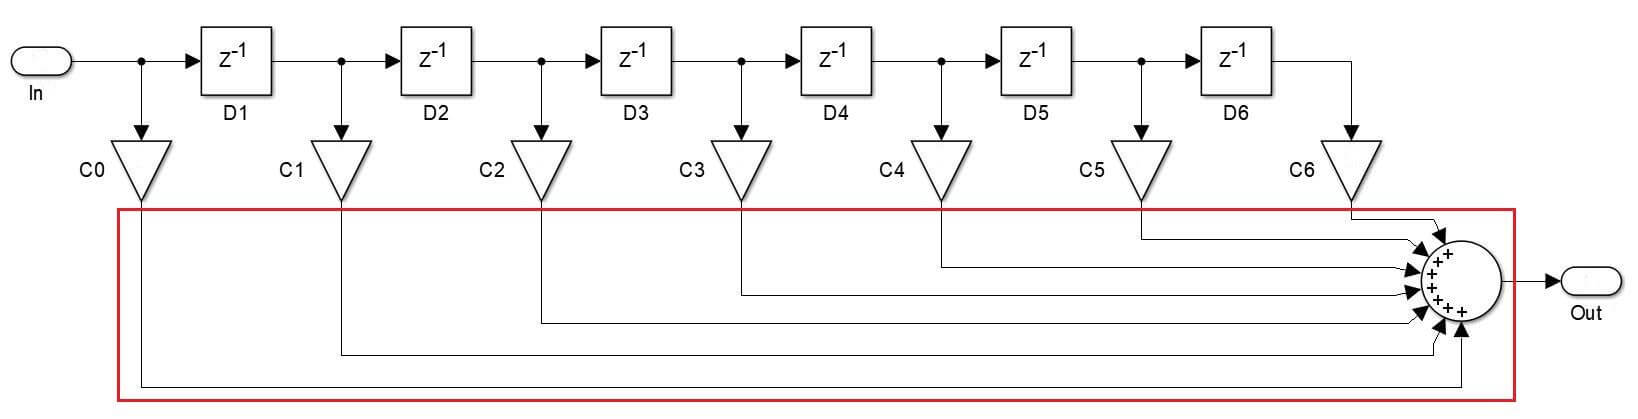 Geestelijk kreupel generatie Part 2: Finite impulse response (FIR) filters - VHDLwhiz